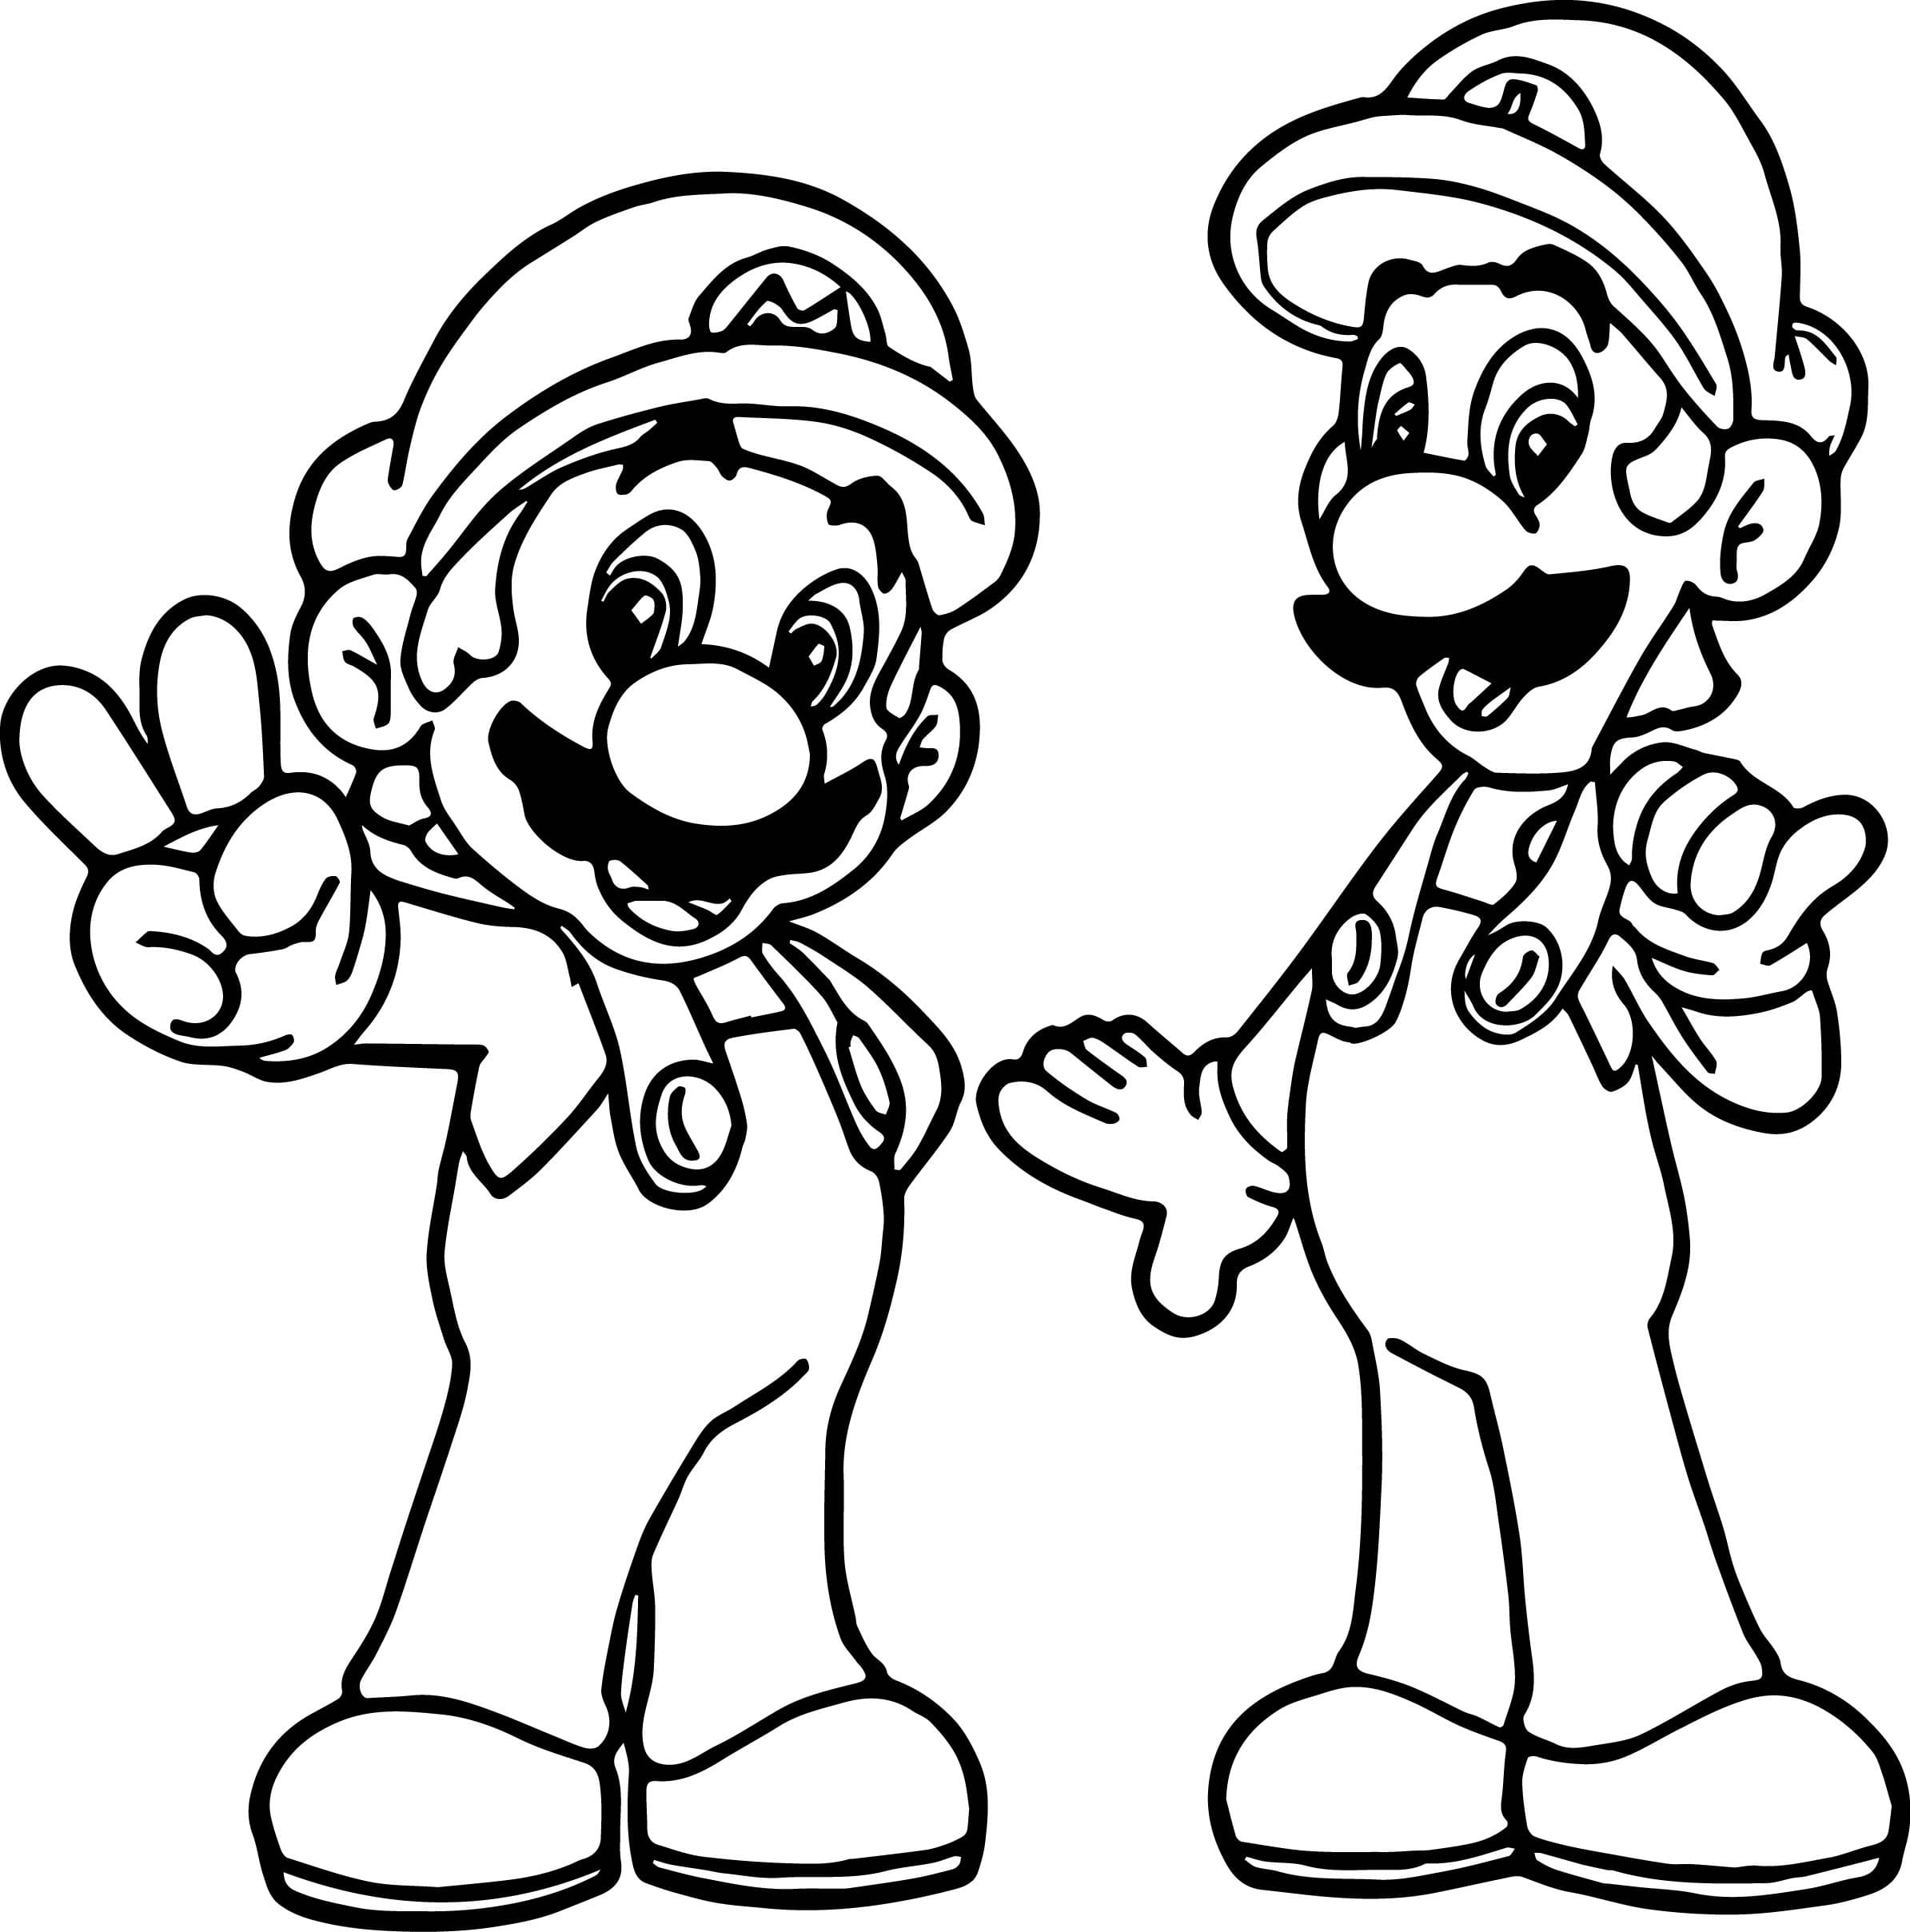 Dibujo 43 de Super Mario para imprimir y colorear